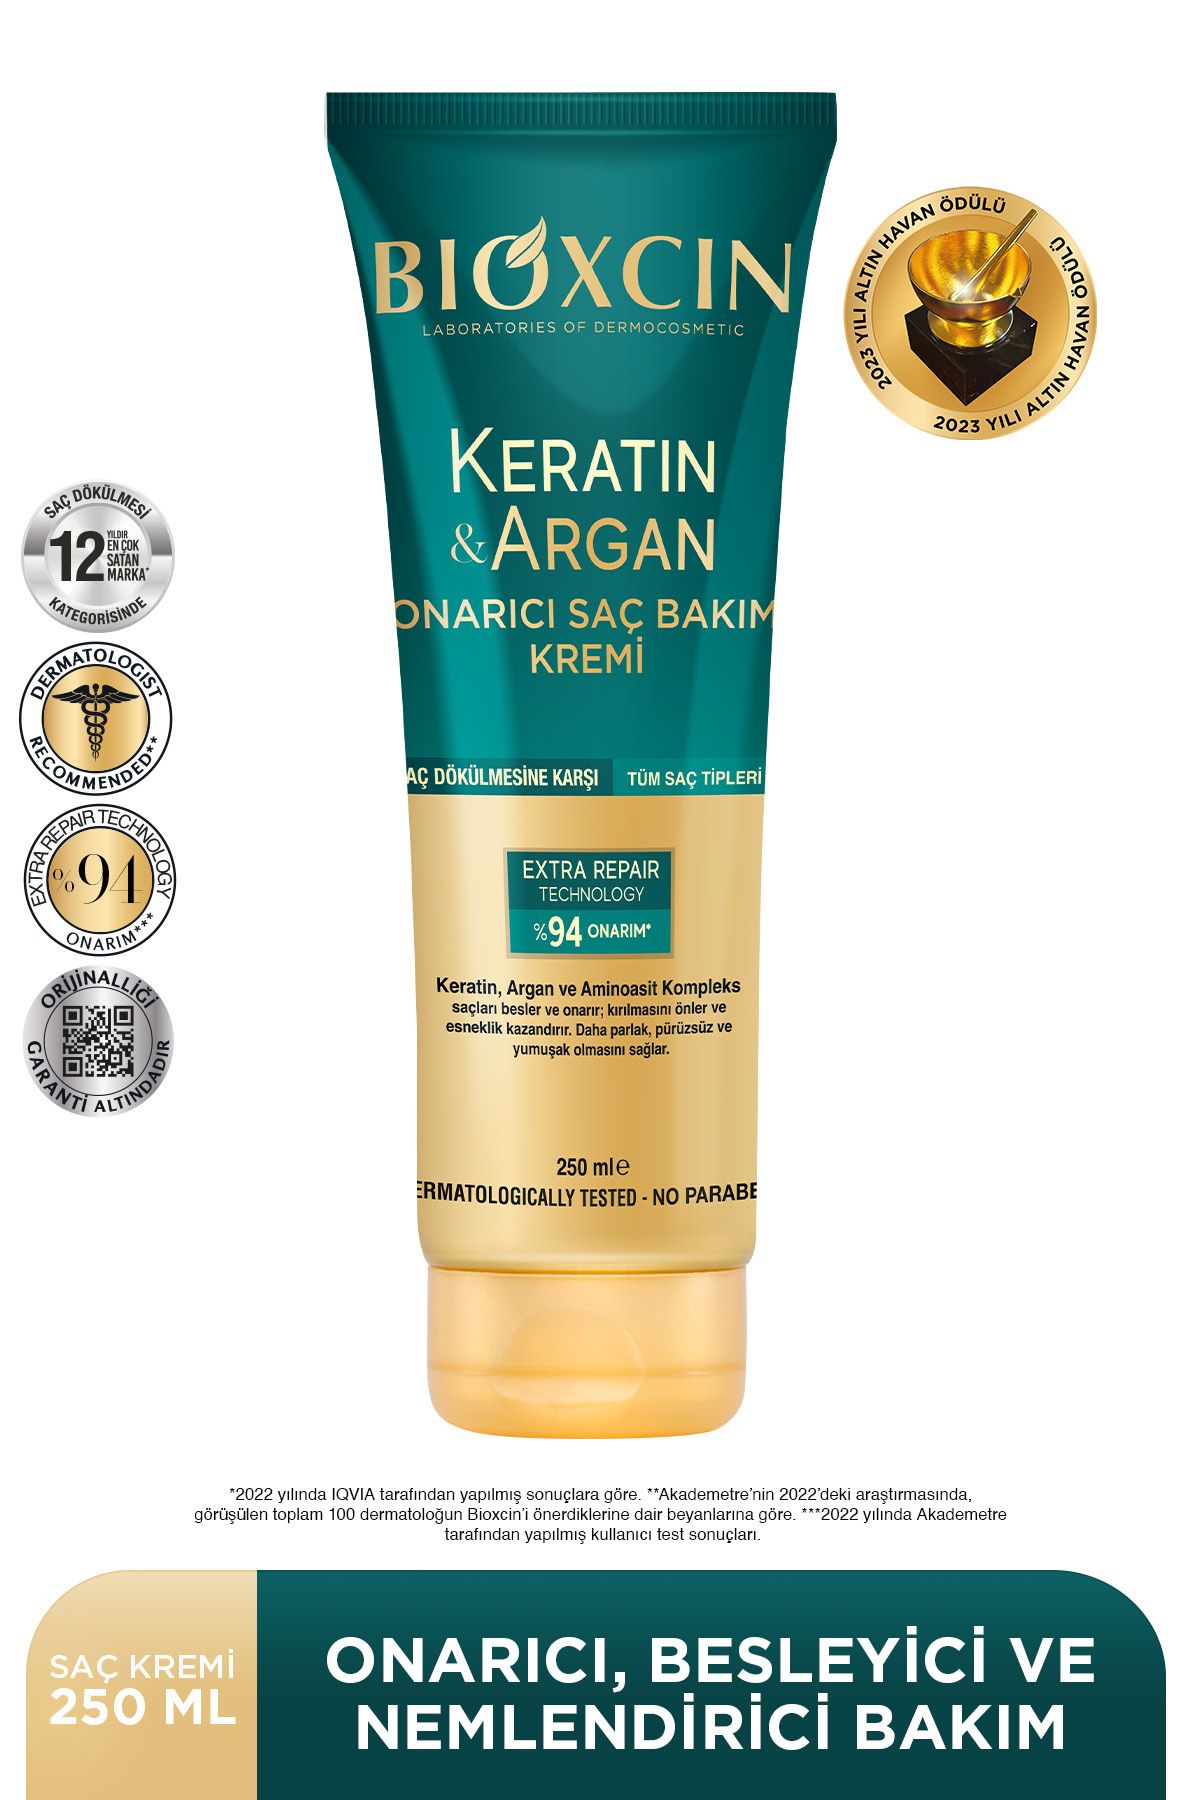 Bioxcin Keratin & Argan Onarıcı Saç Bakım Kremi 250 ml - Yıpranmış ve Hassas Saçlar